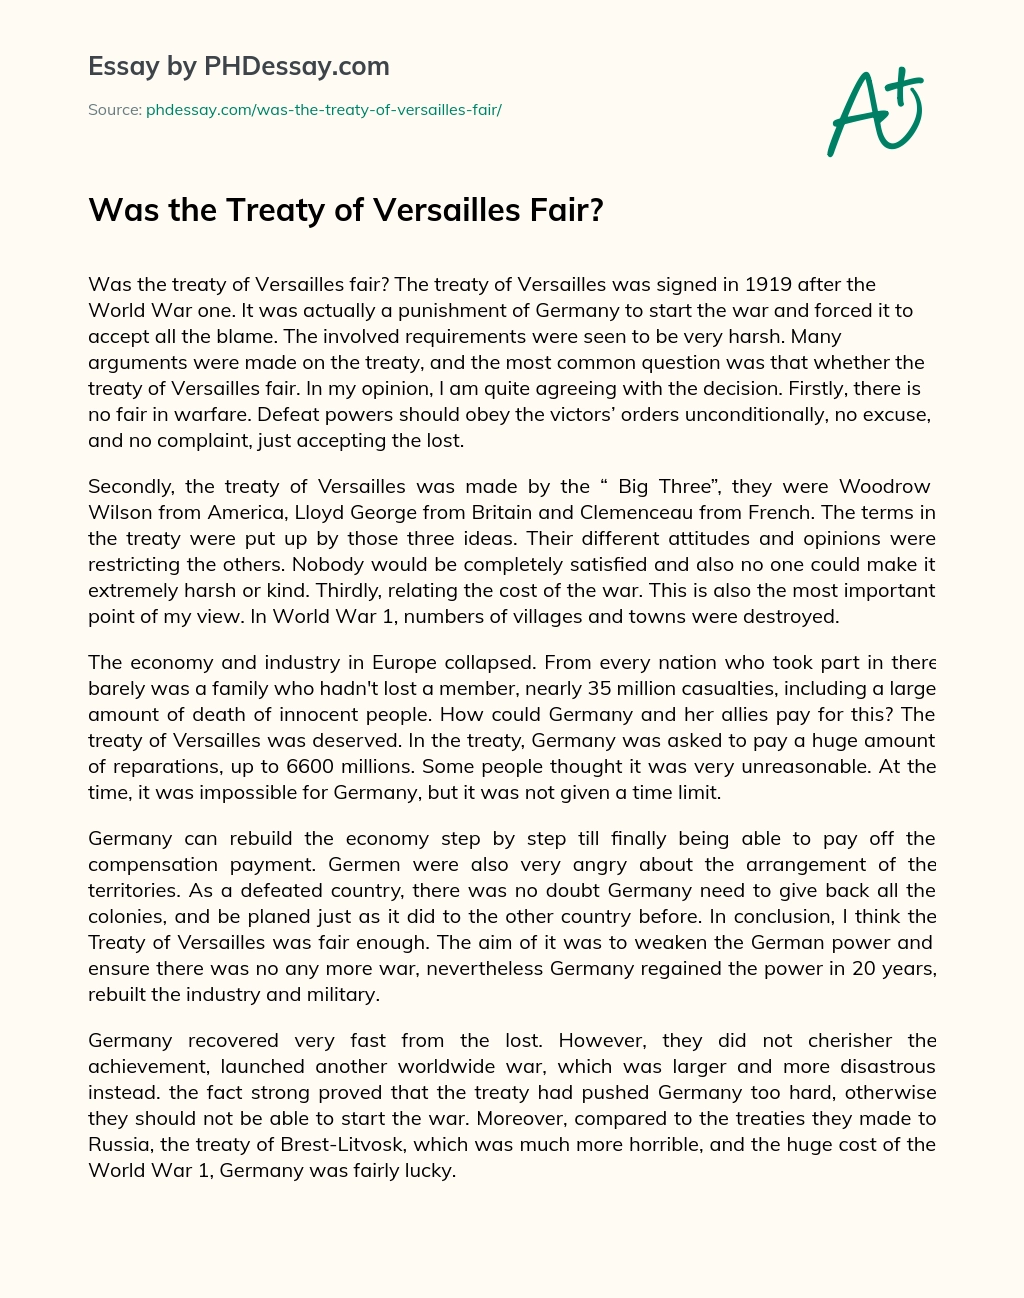 treaty of versailles essay conclusion